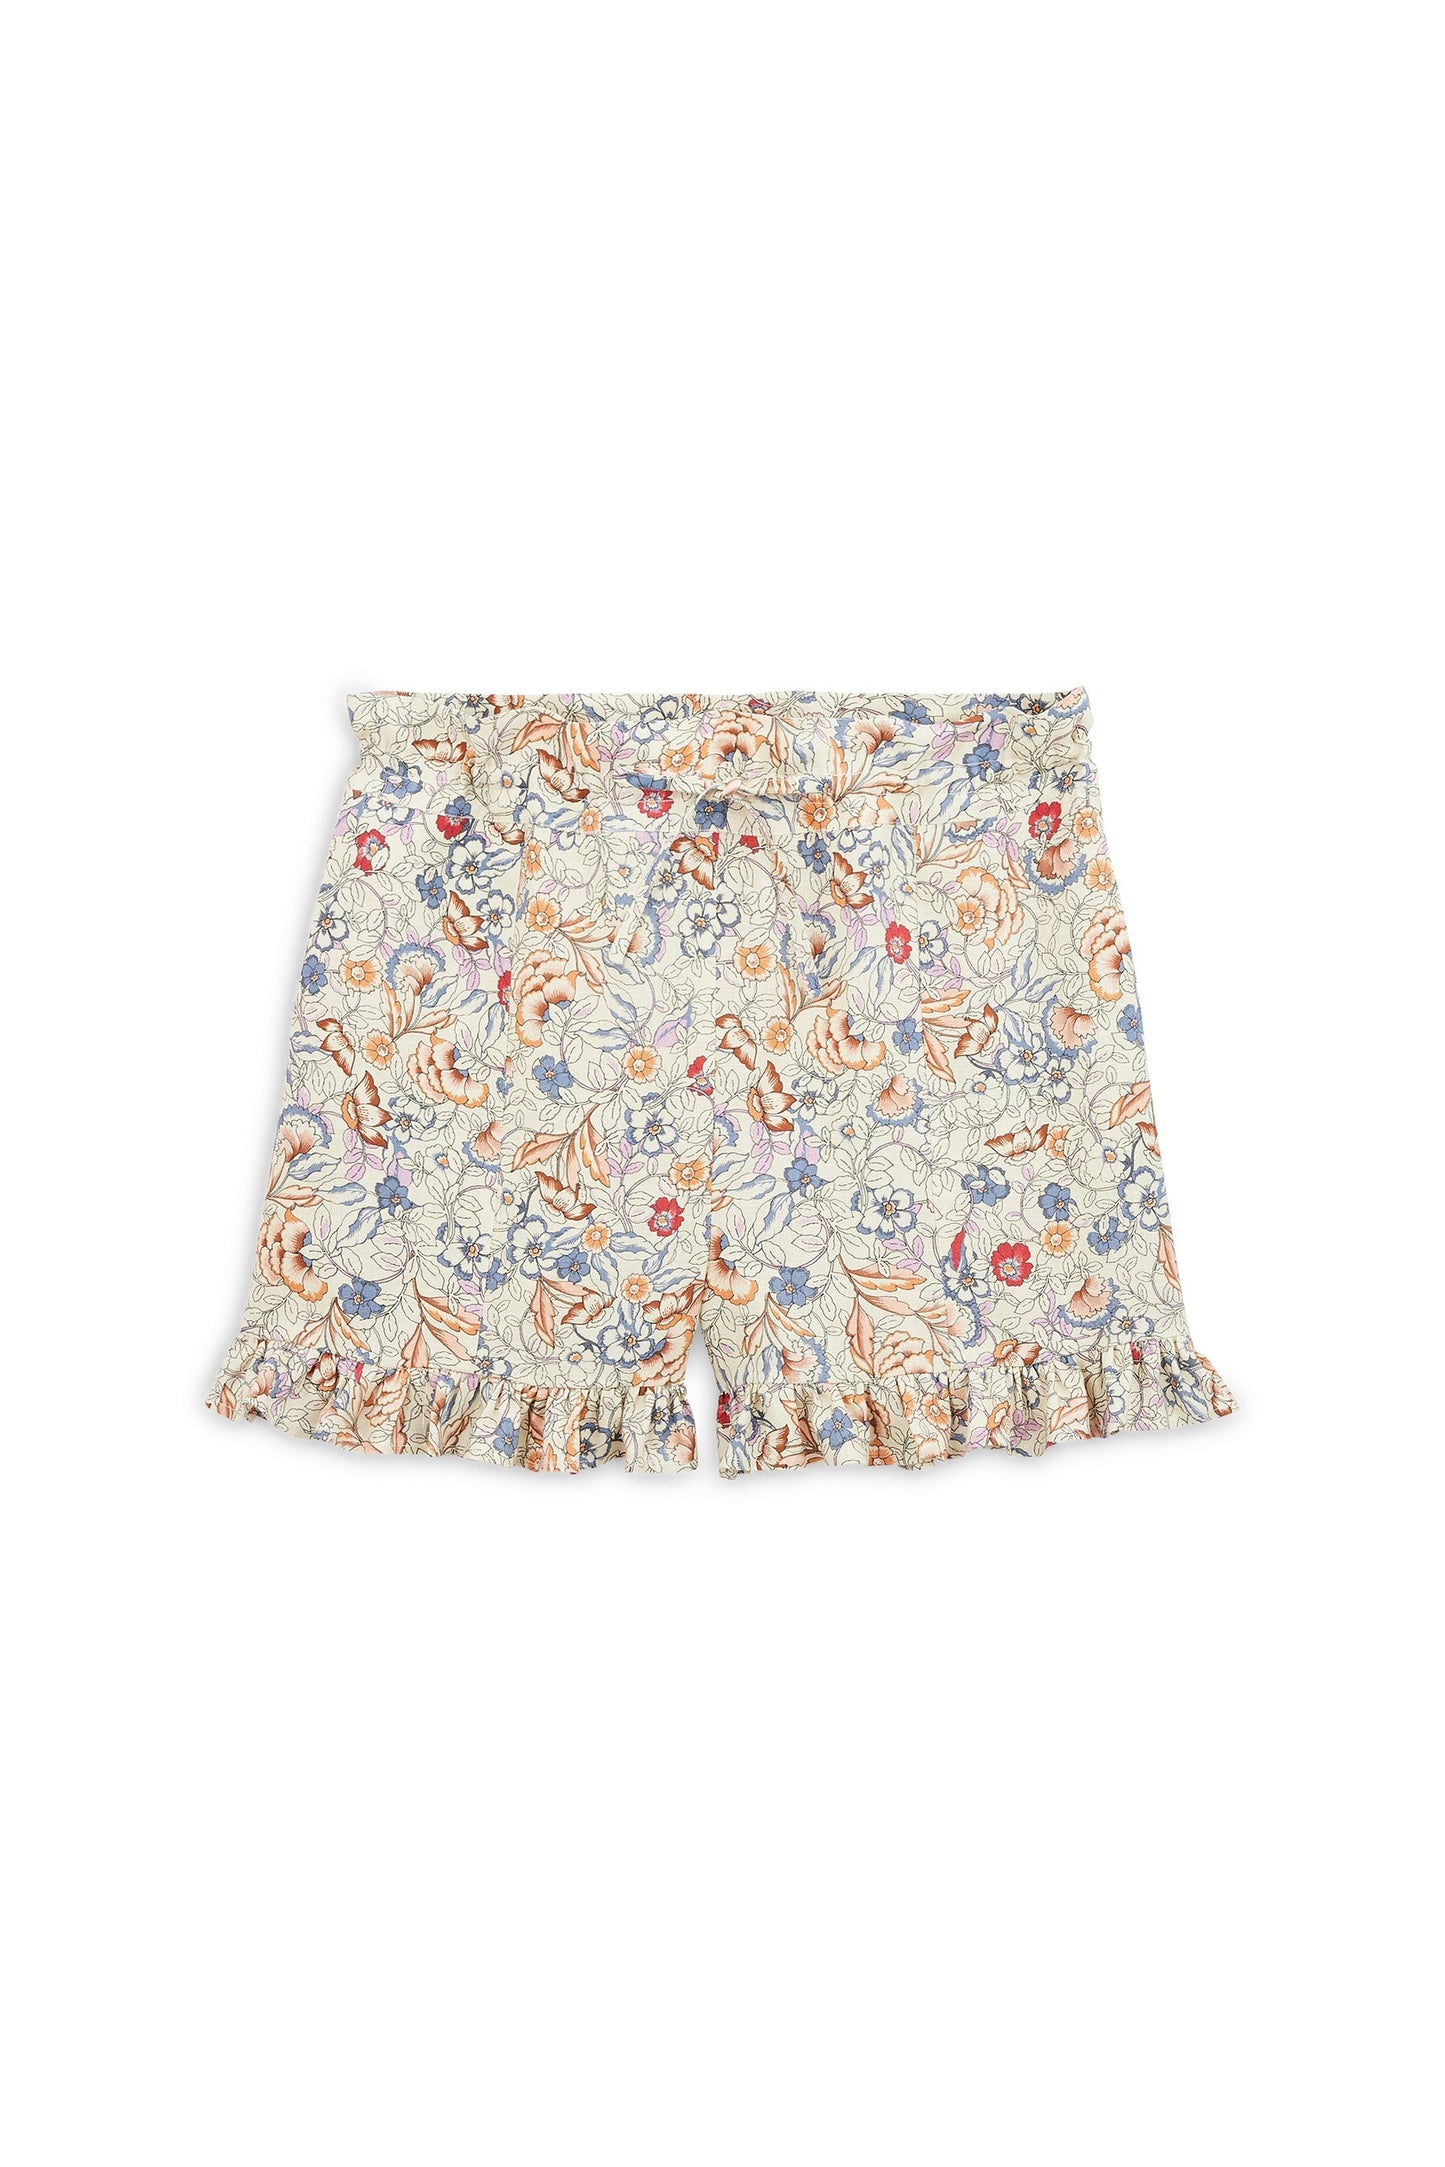 floral Indian print pueblo shorts